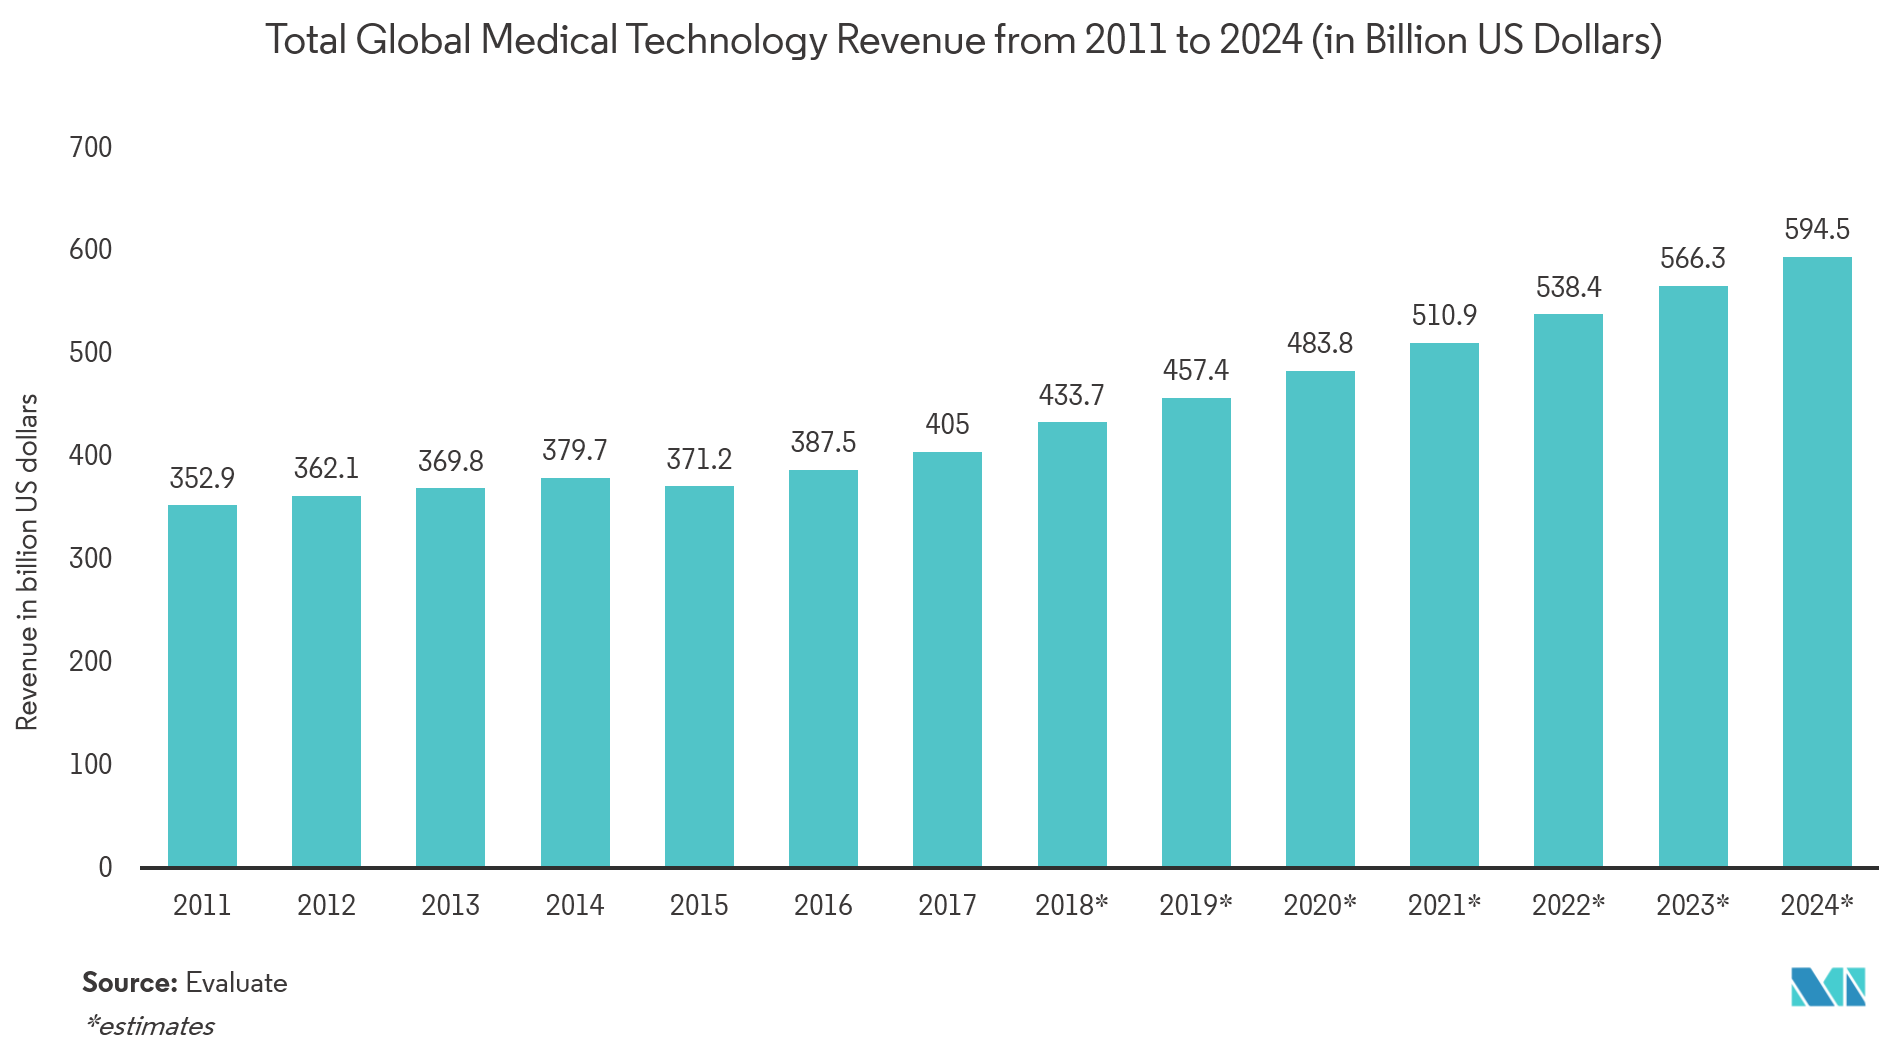 Marché des capteurs biomédicaux&nbsp; chiffre daffaires mondial total de la technologie médicale de 2011 à 2024 (en milliards de dollars américains)